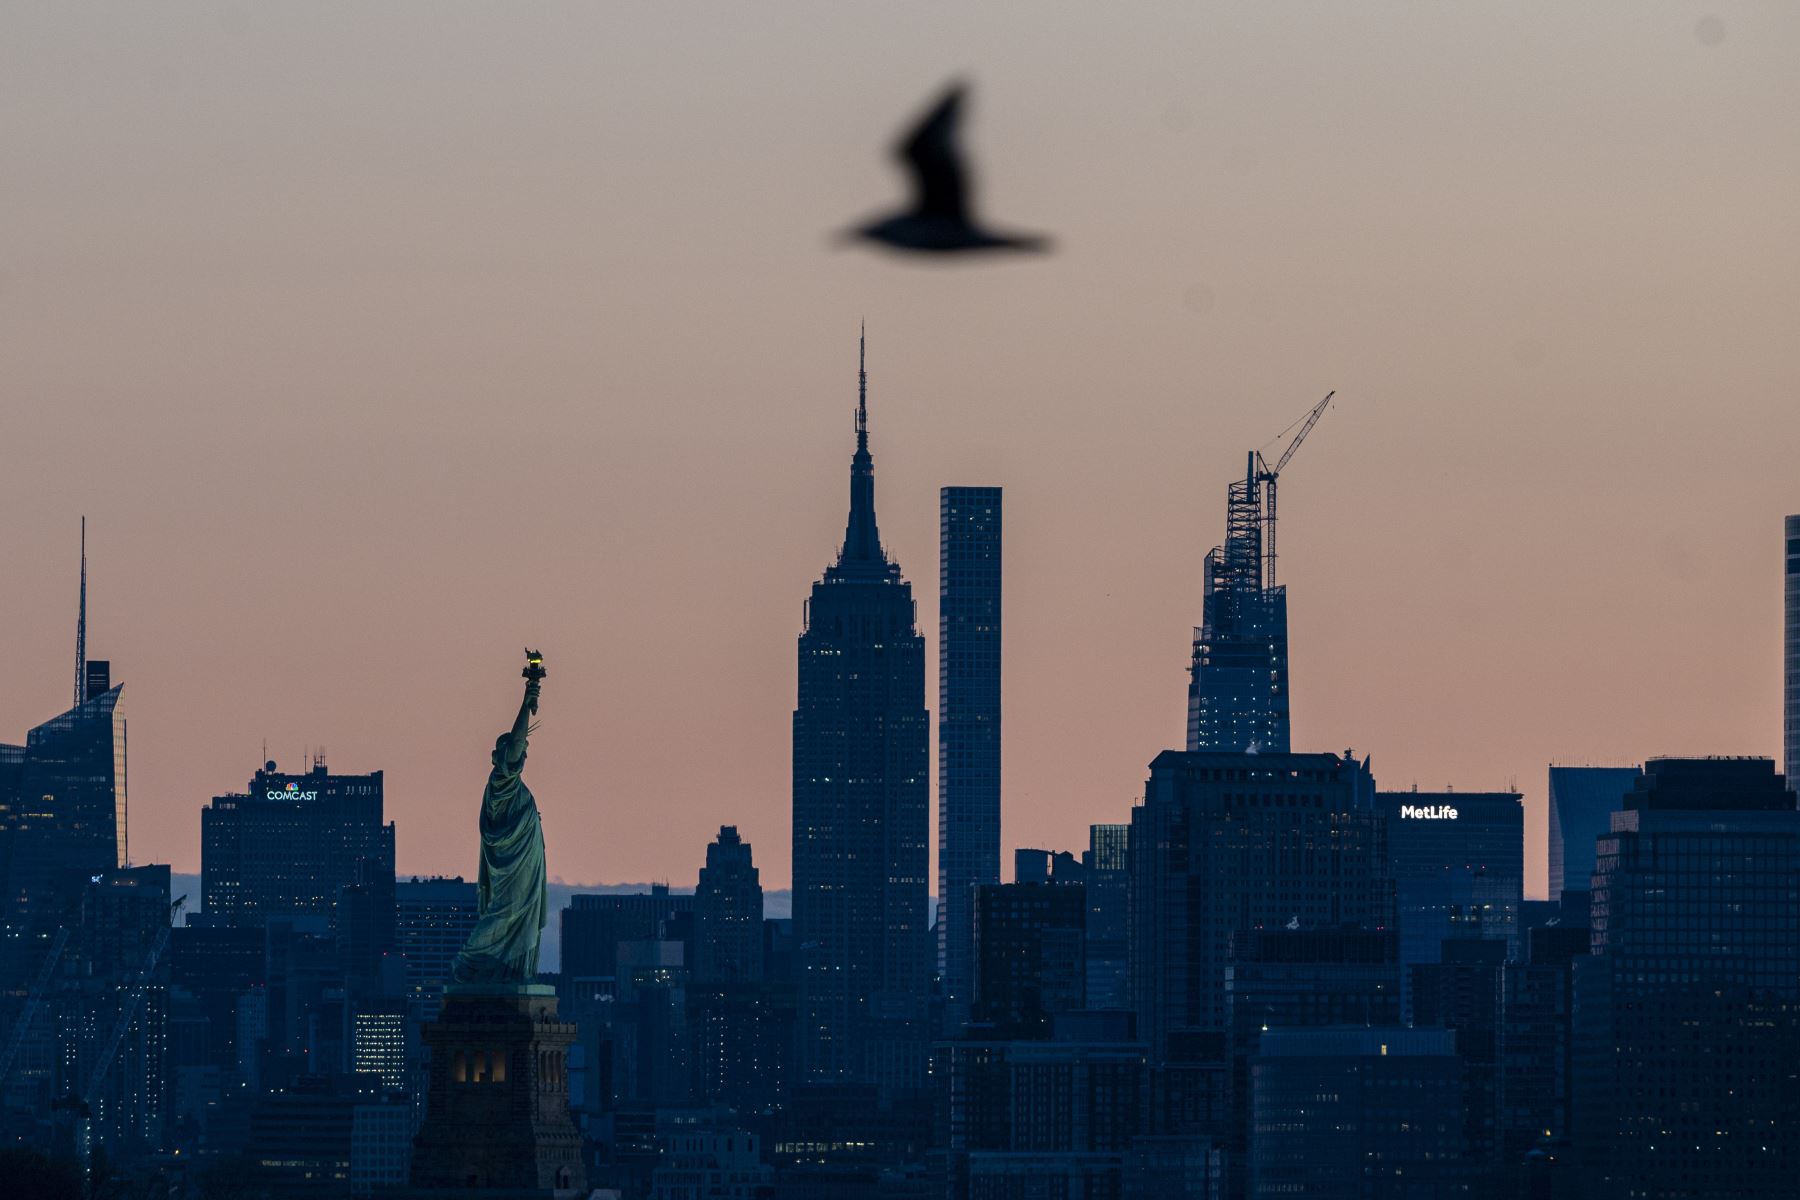 El sol sale detrás del horizonte de Manhattan y la Estatua de la Libertad  en la ciudad de Nueva York.
Foto: AFP